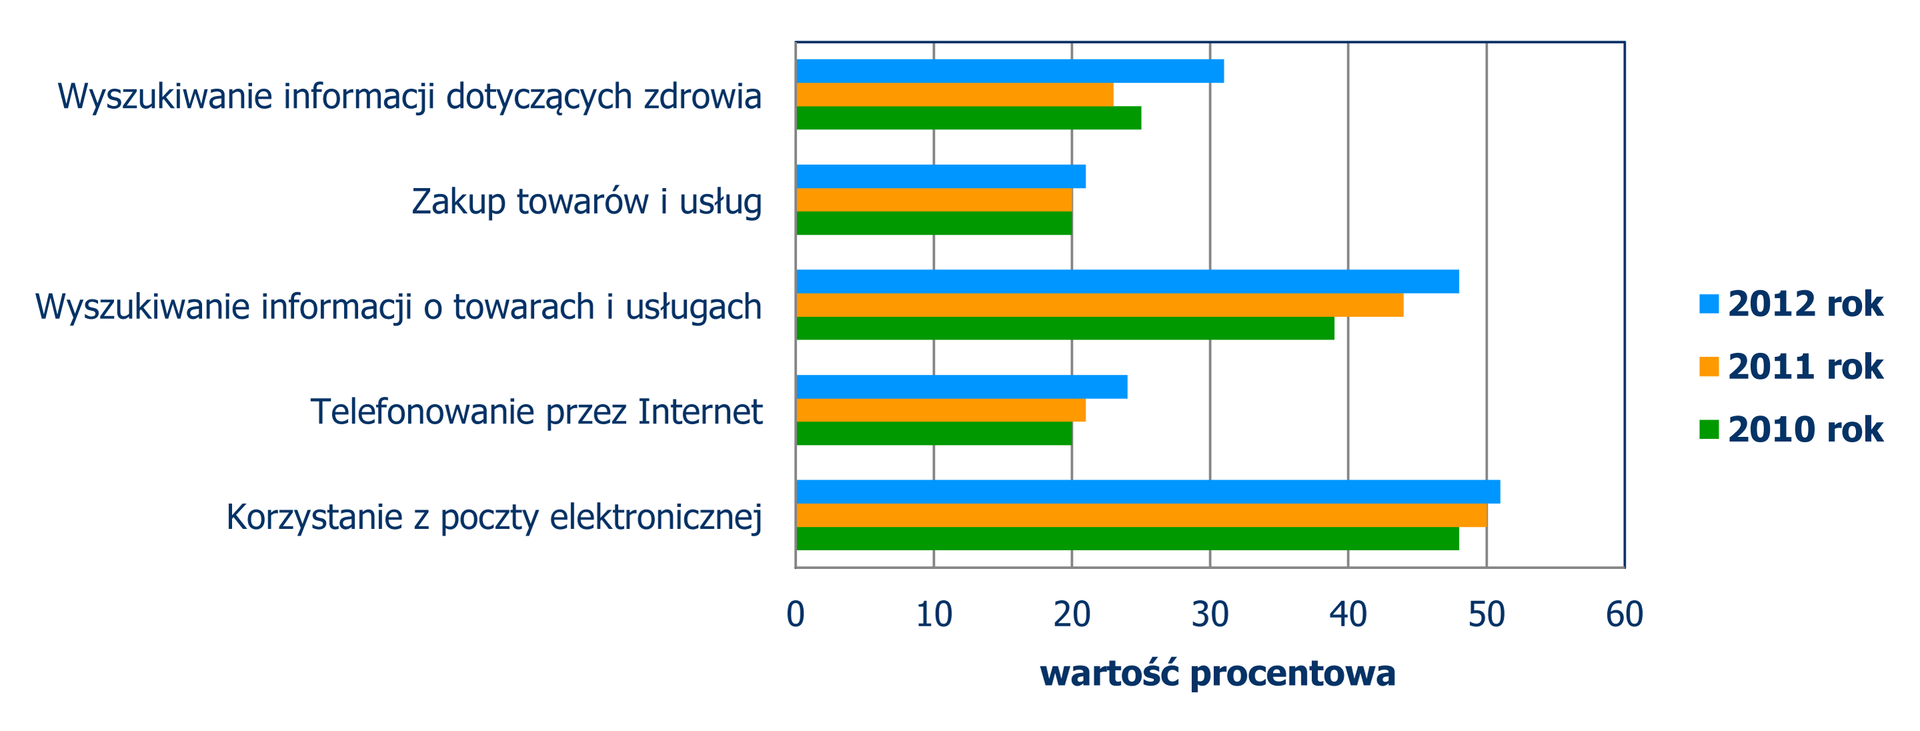 Diagram słupkowy poziomy, z którego odczytujemy wykorzystywanie Internetu w latach 2010, 2011, 2012. Wyszukiwanie informacji dotyczących zdrowia: 2012 – 31%, 2011 – 23%, 2010 – 25%. Zakup towarów i usług: 2012 – 21%, 2011 – 20%, 2010 – 20%. Wyszukiwanie informacji o towarach i usługach: 2012 – 48%, 2011 – 45%, 2010 – 39%. Telefonowanie przez Internet: 2012 – 25%, 2011 – 21%, 2010 – 20%. Korzystanie z poczty elektronicznej: 2012 – 51%, 2011 – 50%, 2010 – 48%.